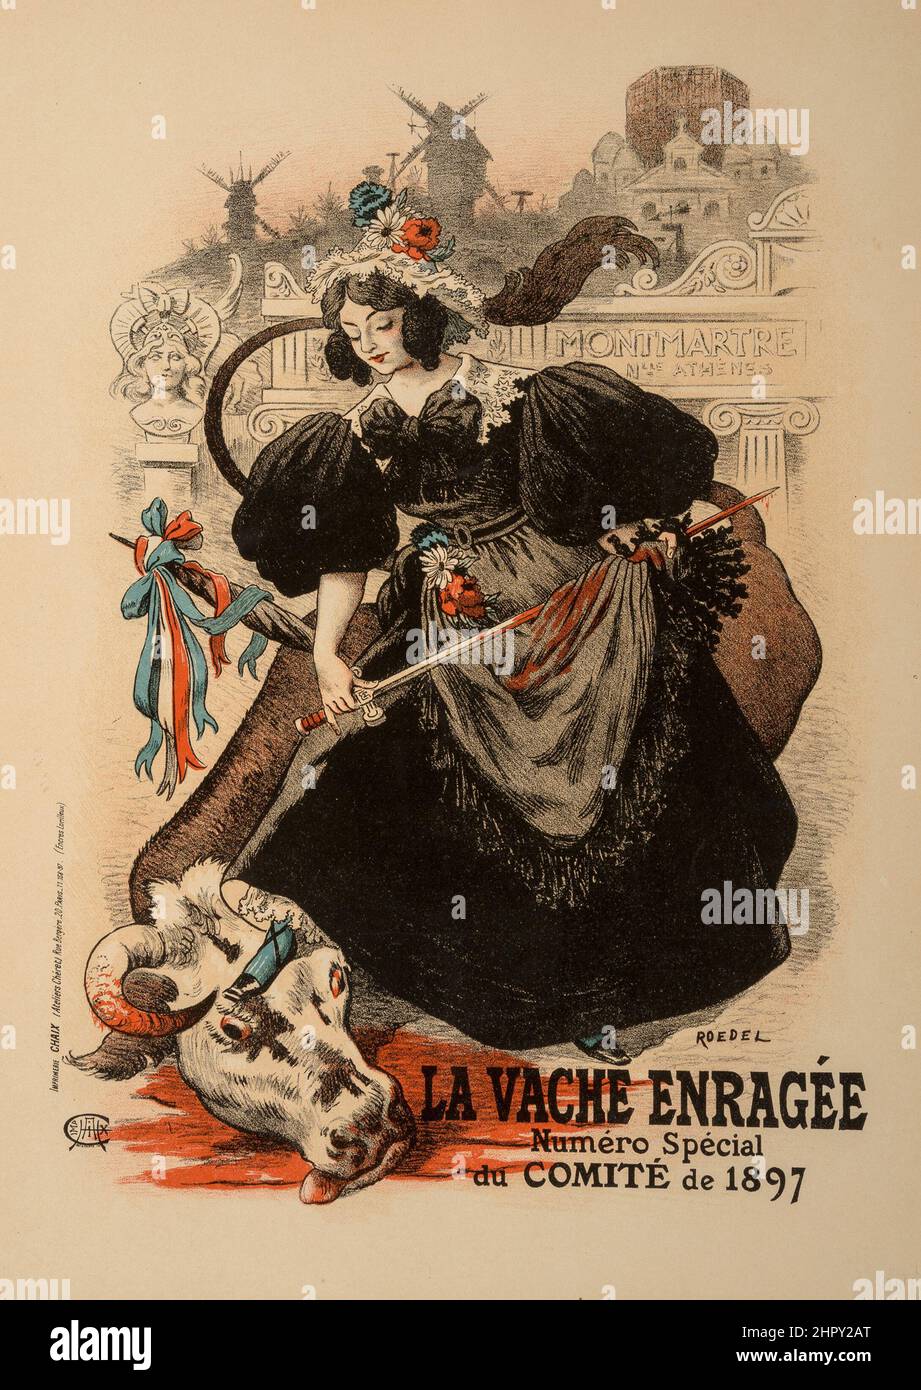 Roedel (1859-1900). La Vache Enragee (from Les Maitres de L'Affiche), plate 179. Lithograph in colors. 1897. Stock Photo